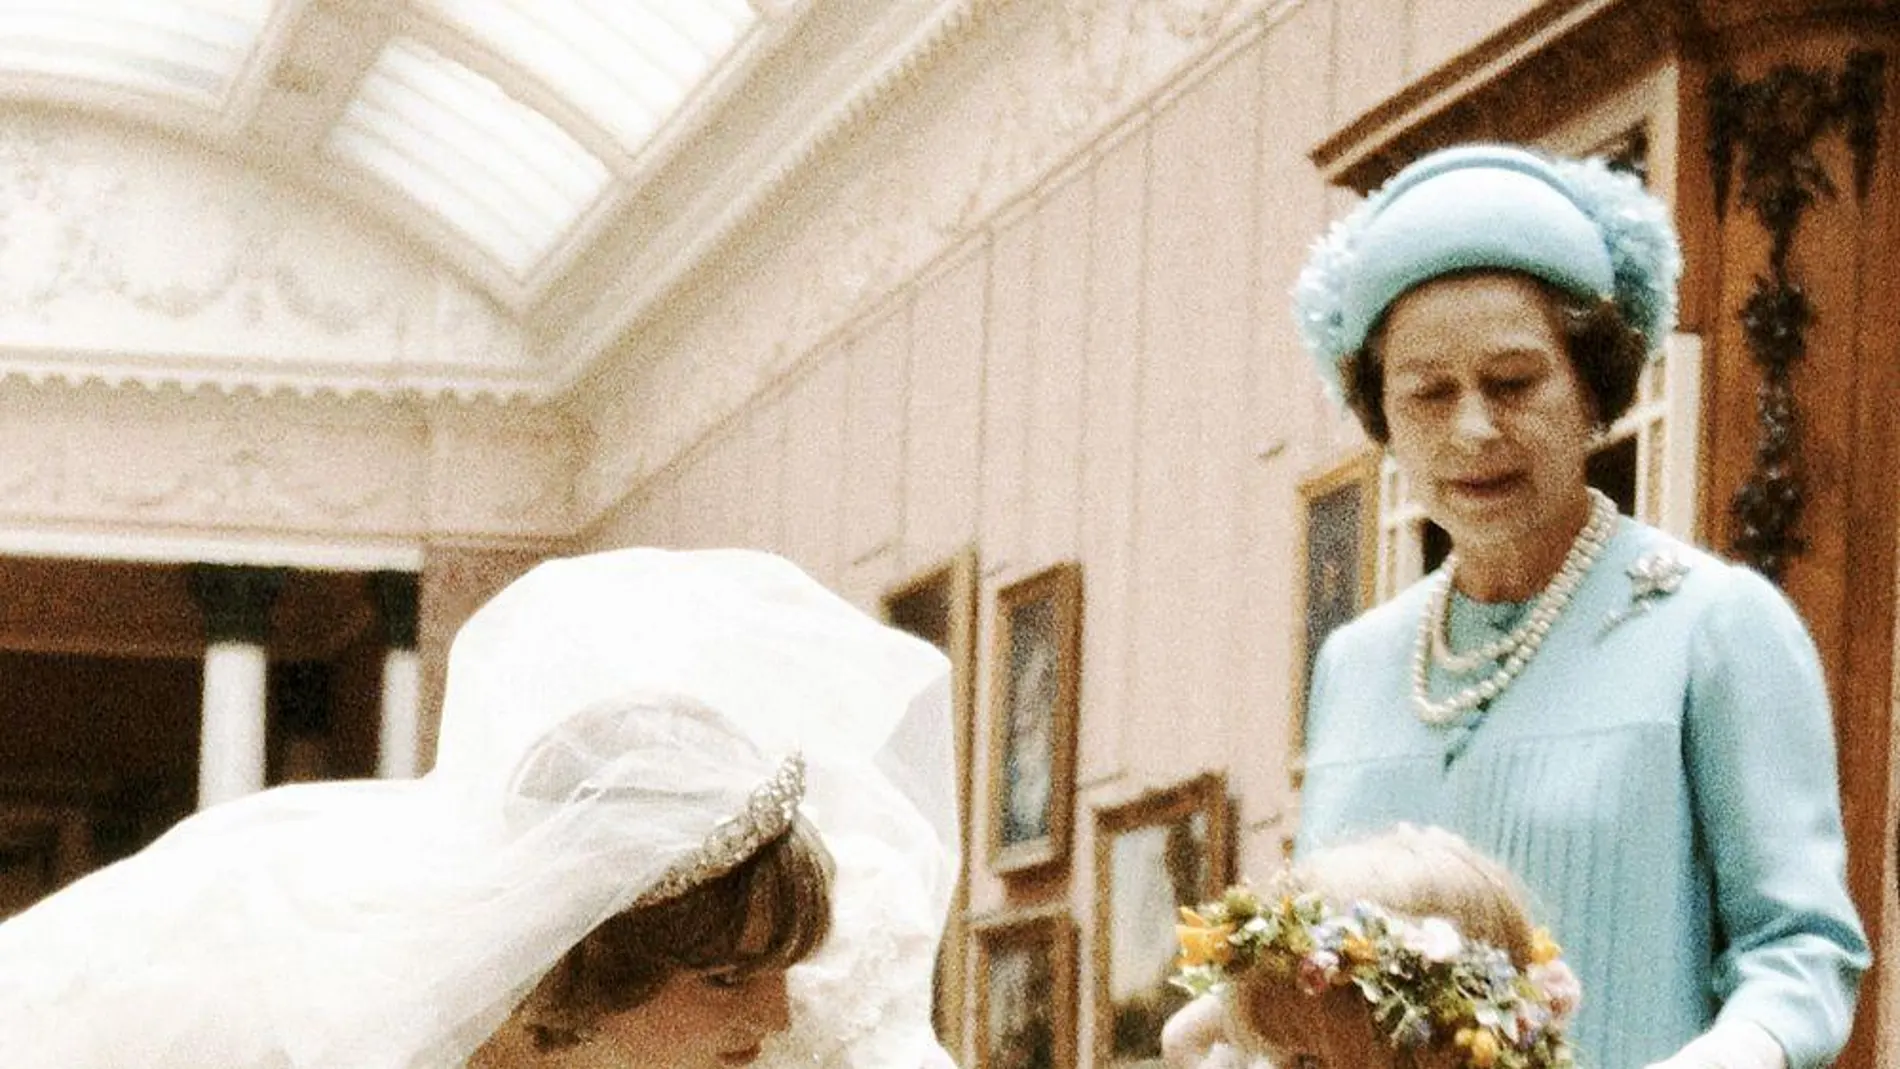 Diana de Gales, el día de su boda, saluda a la pequela Clemmie Hambro, una de sus damas de honor